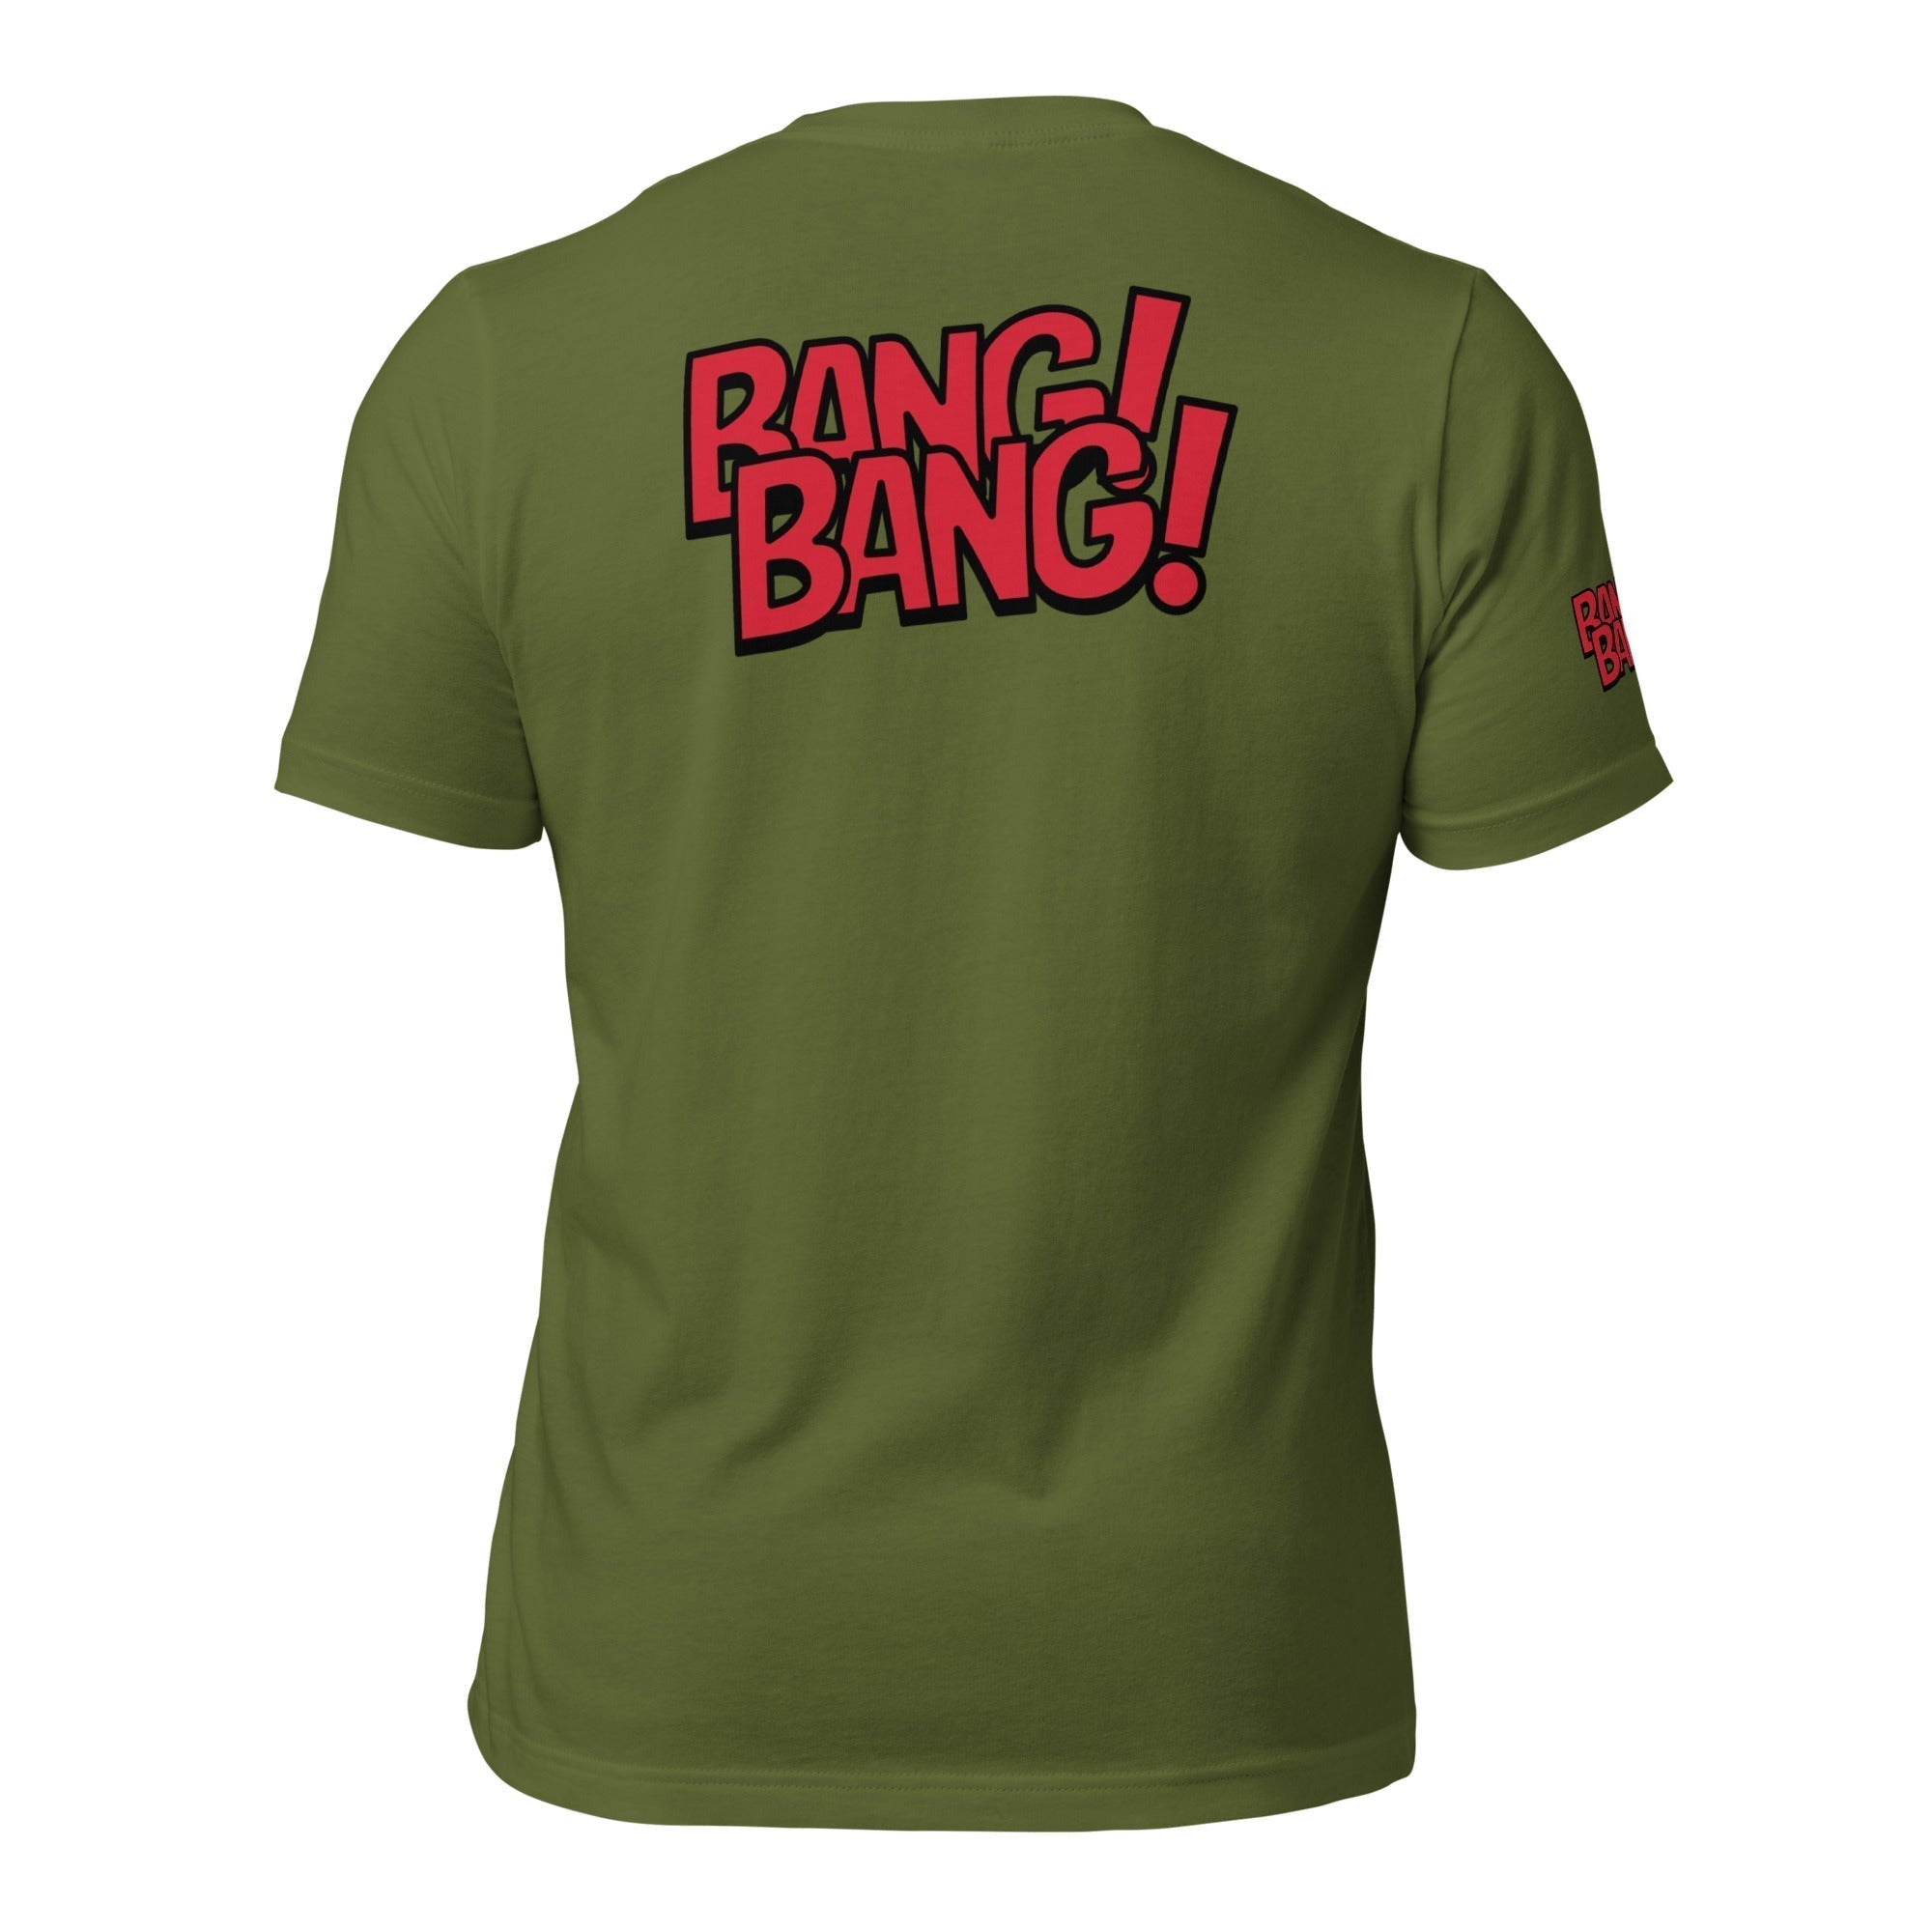 Unisex Crew Neck T-Shirt - Pulp Fiction Bang! Bang! - GRAPHIC T-SHIRTS